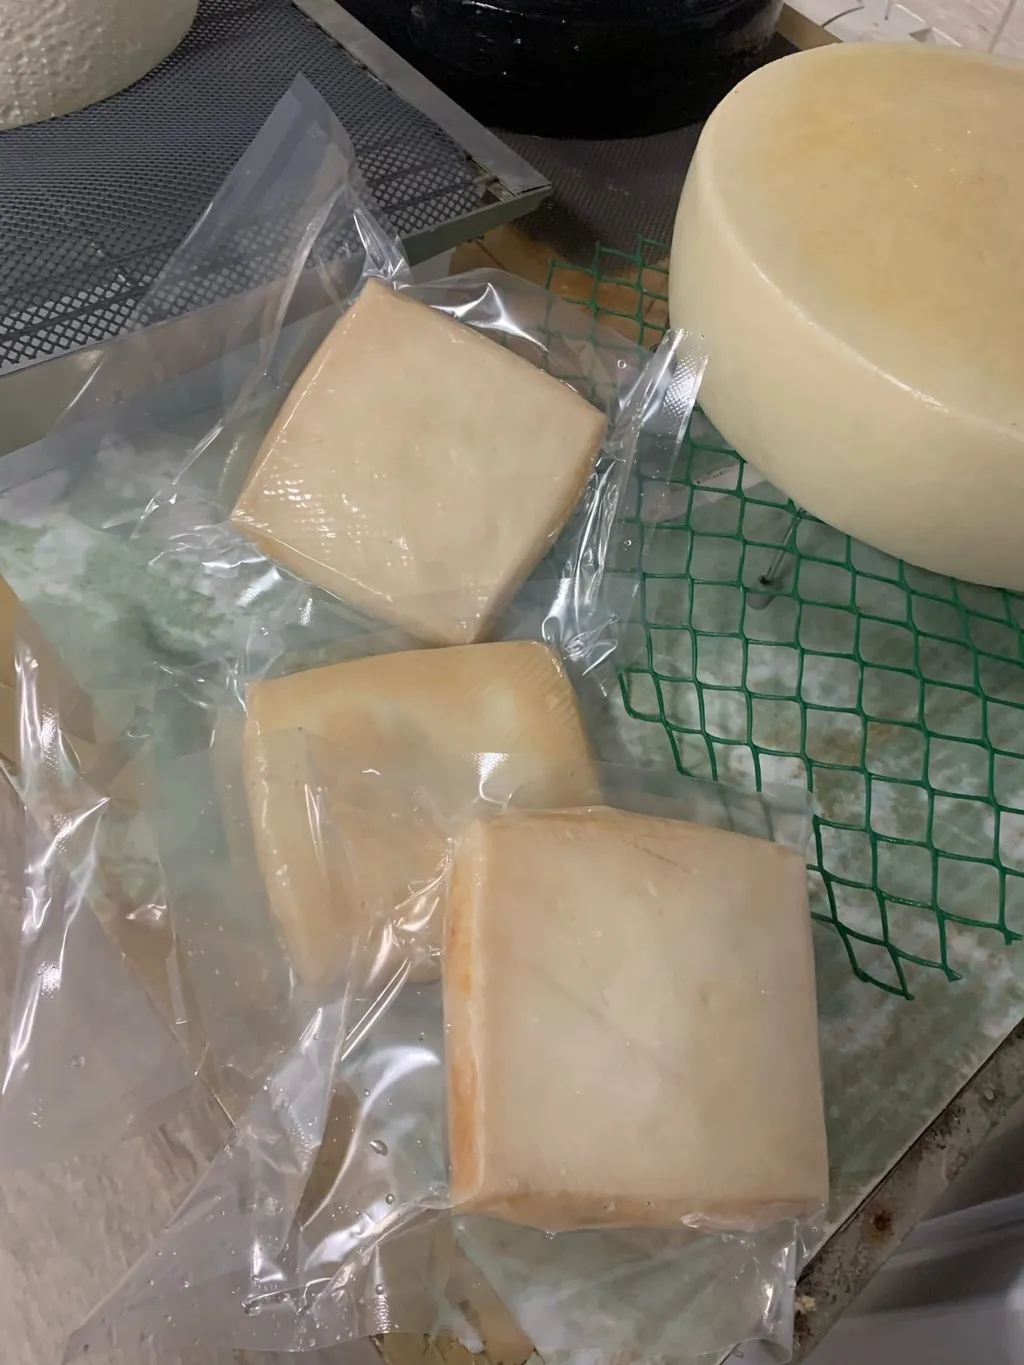 крафтовый сыр из козьего молока в Краснодаре и Краснодарском крае 3